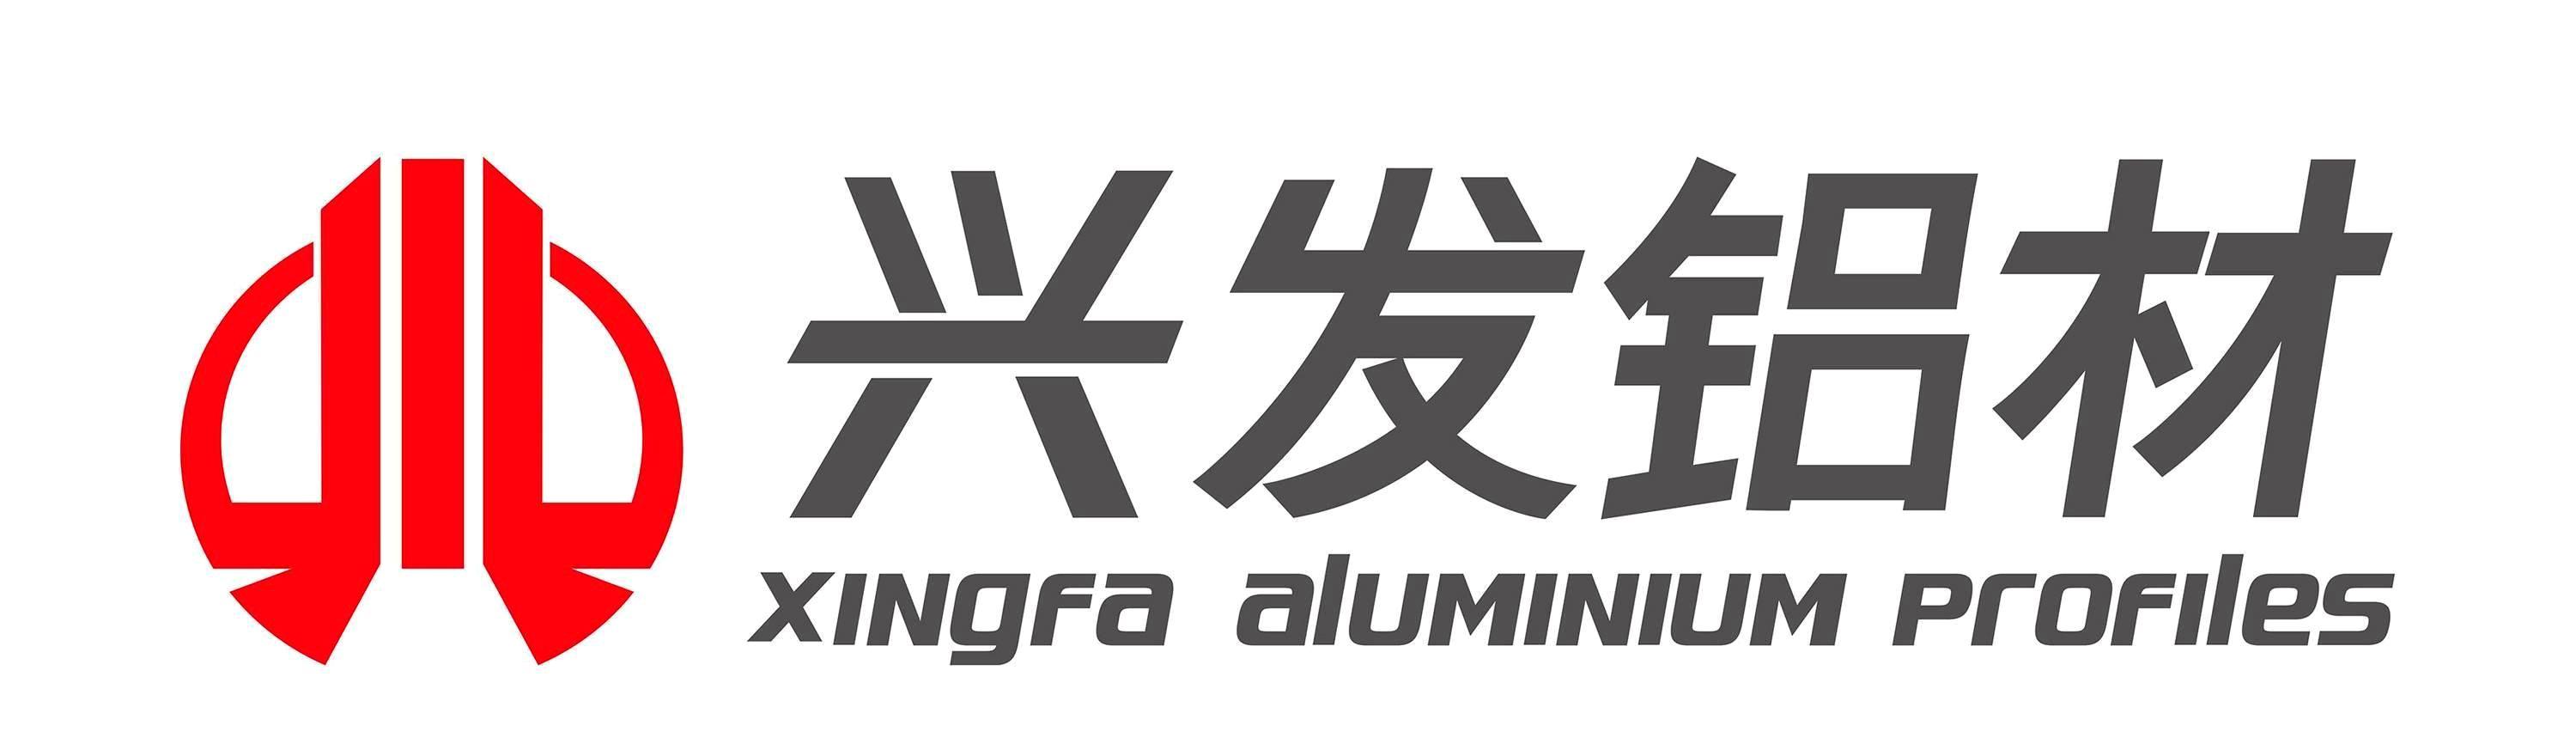 Xingfa aluminum